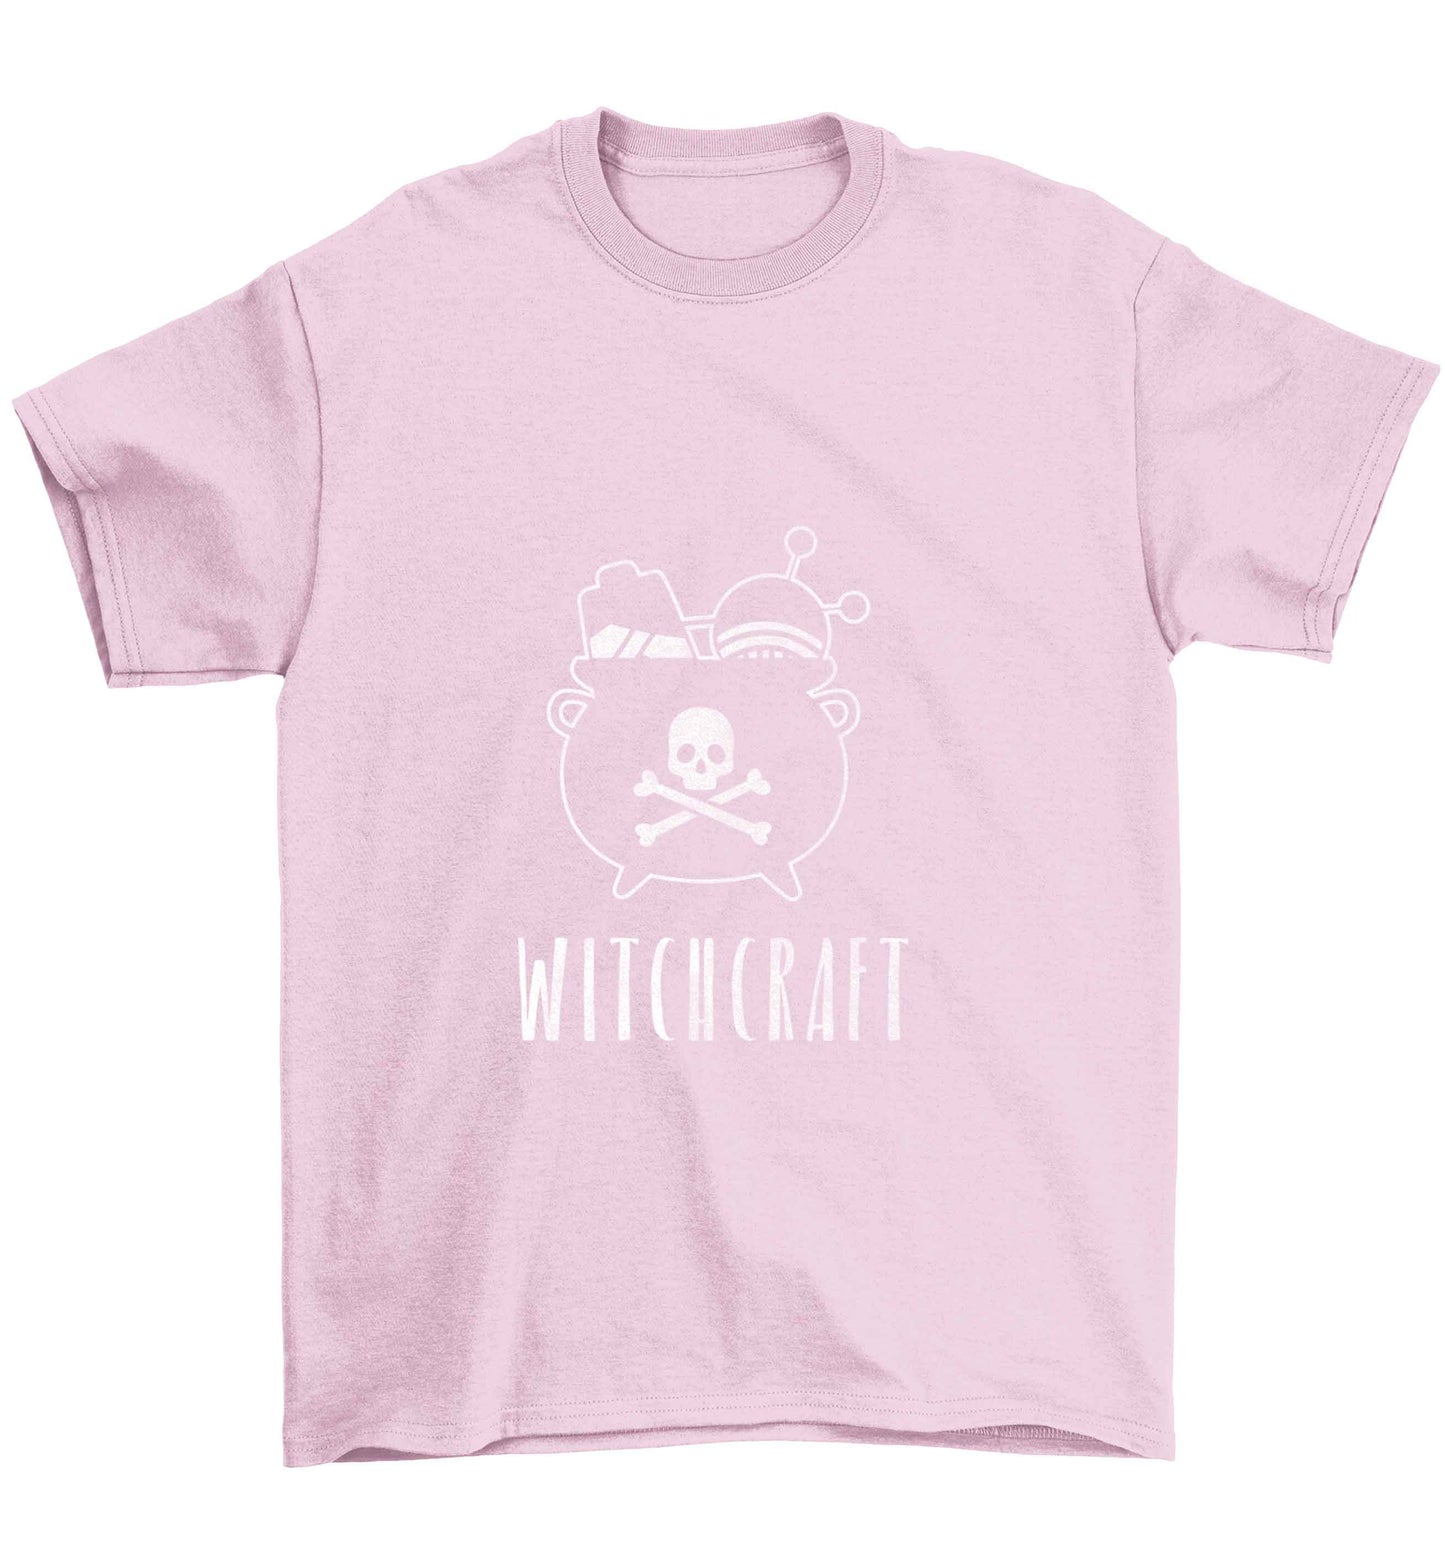 Witchcraft Children's light pink Tshirt 12-13 Years